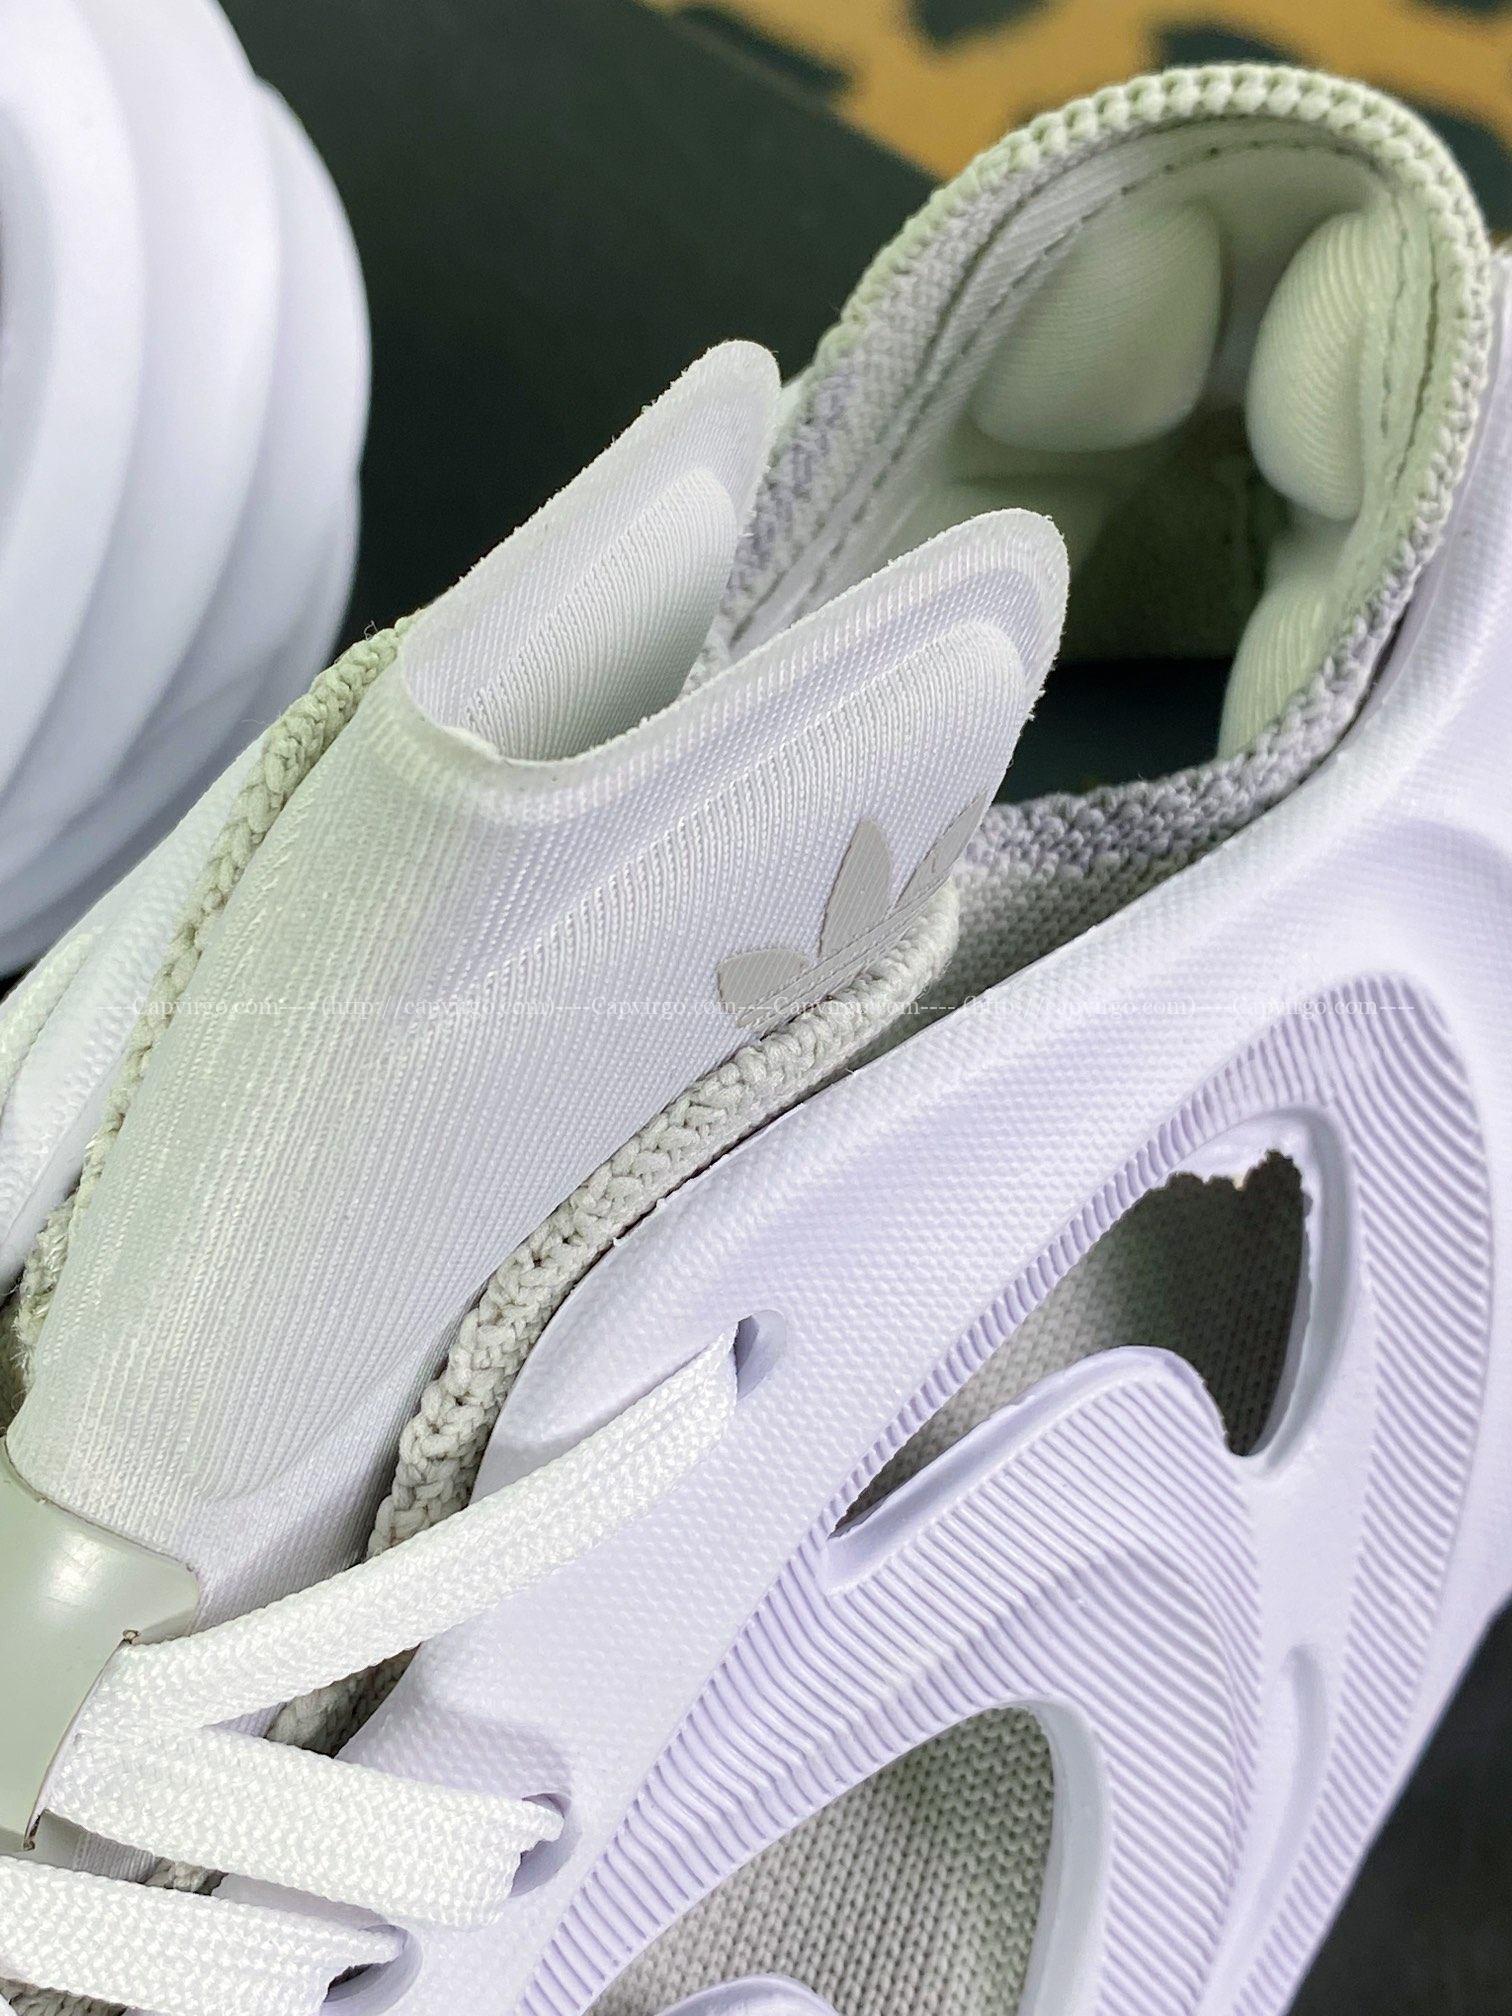 Giày Adidas FOM Q màu trắng mẫu mới nhất